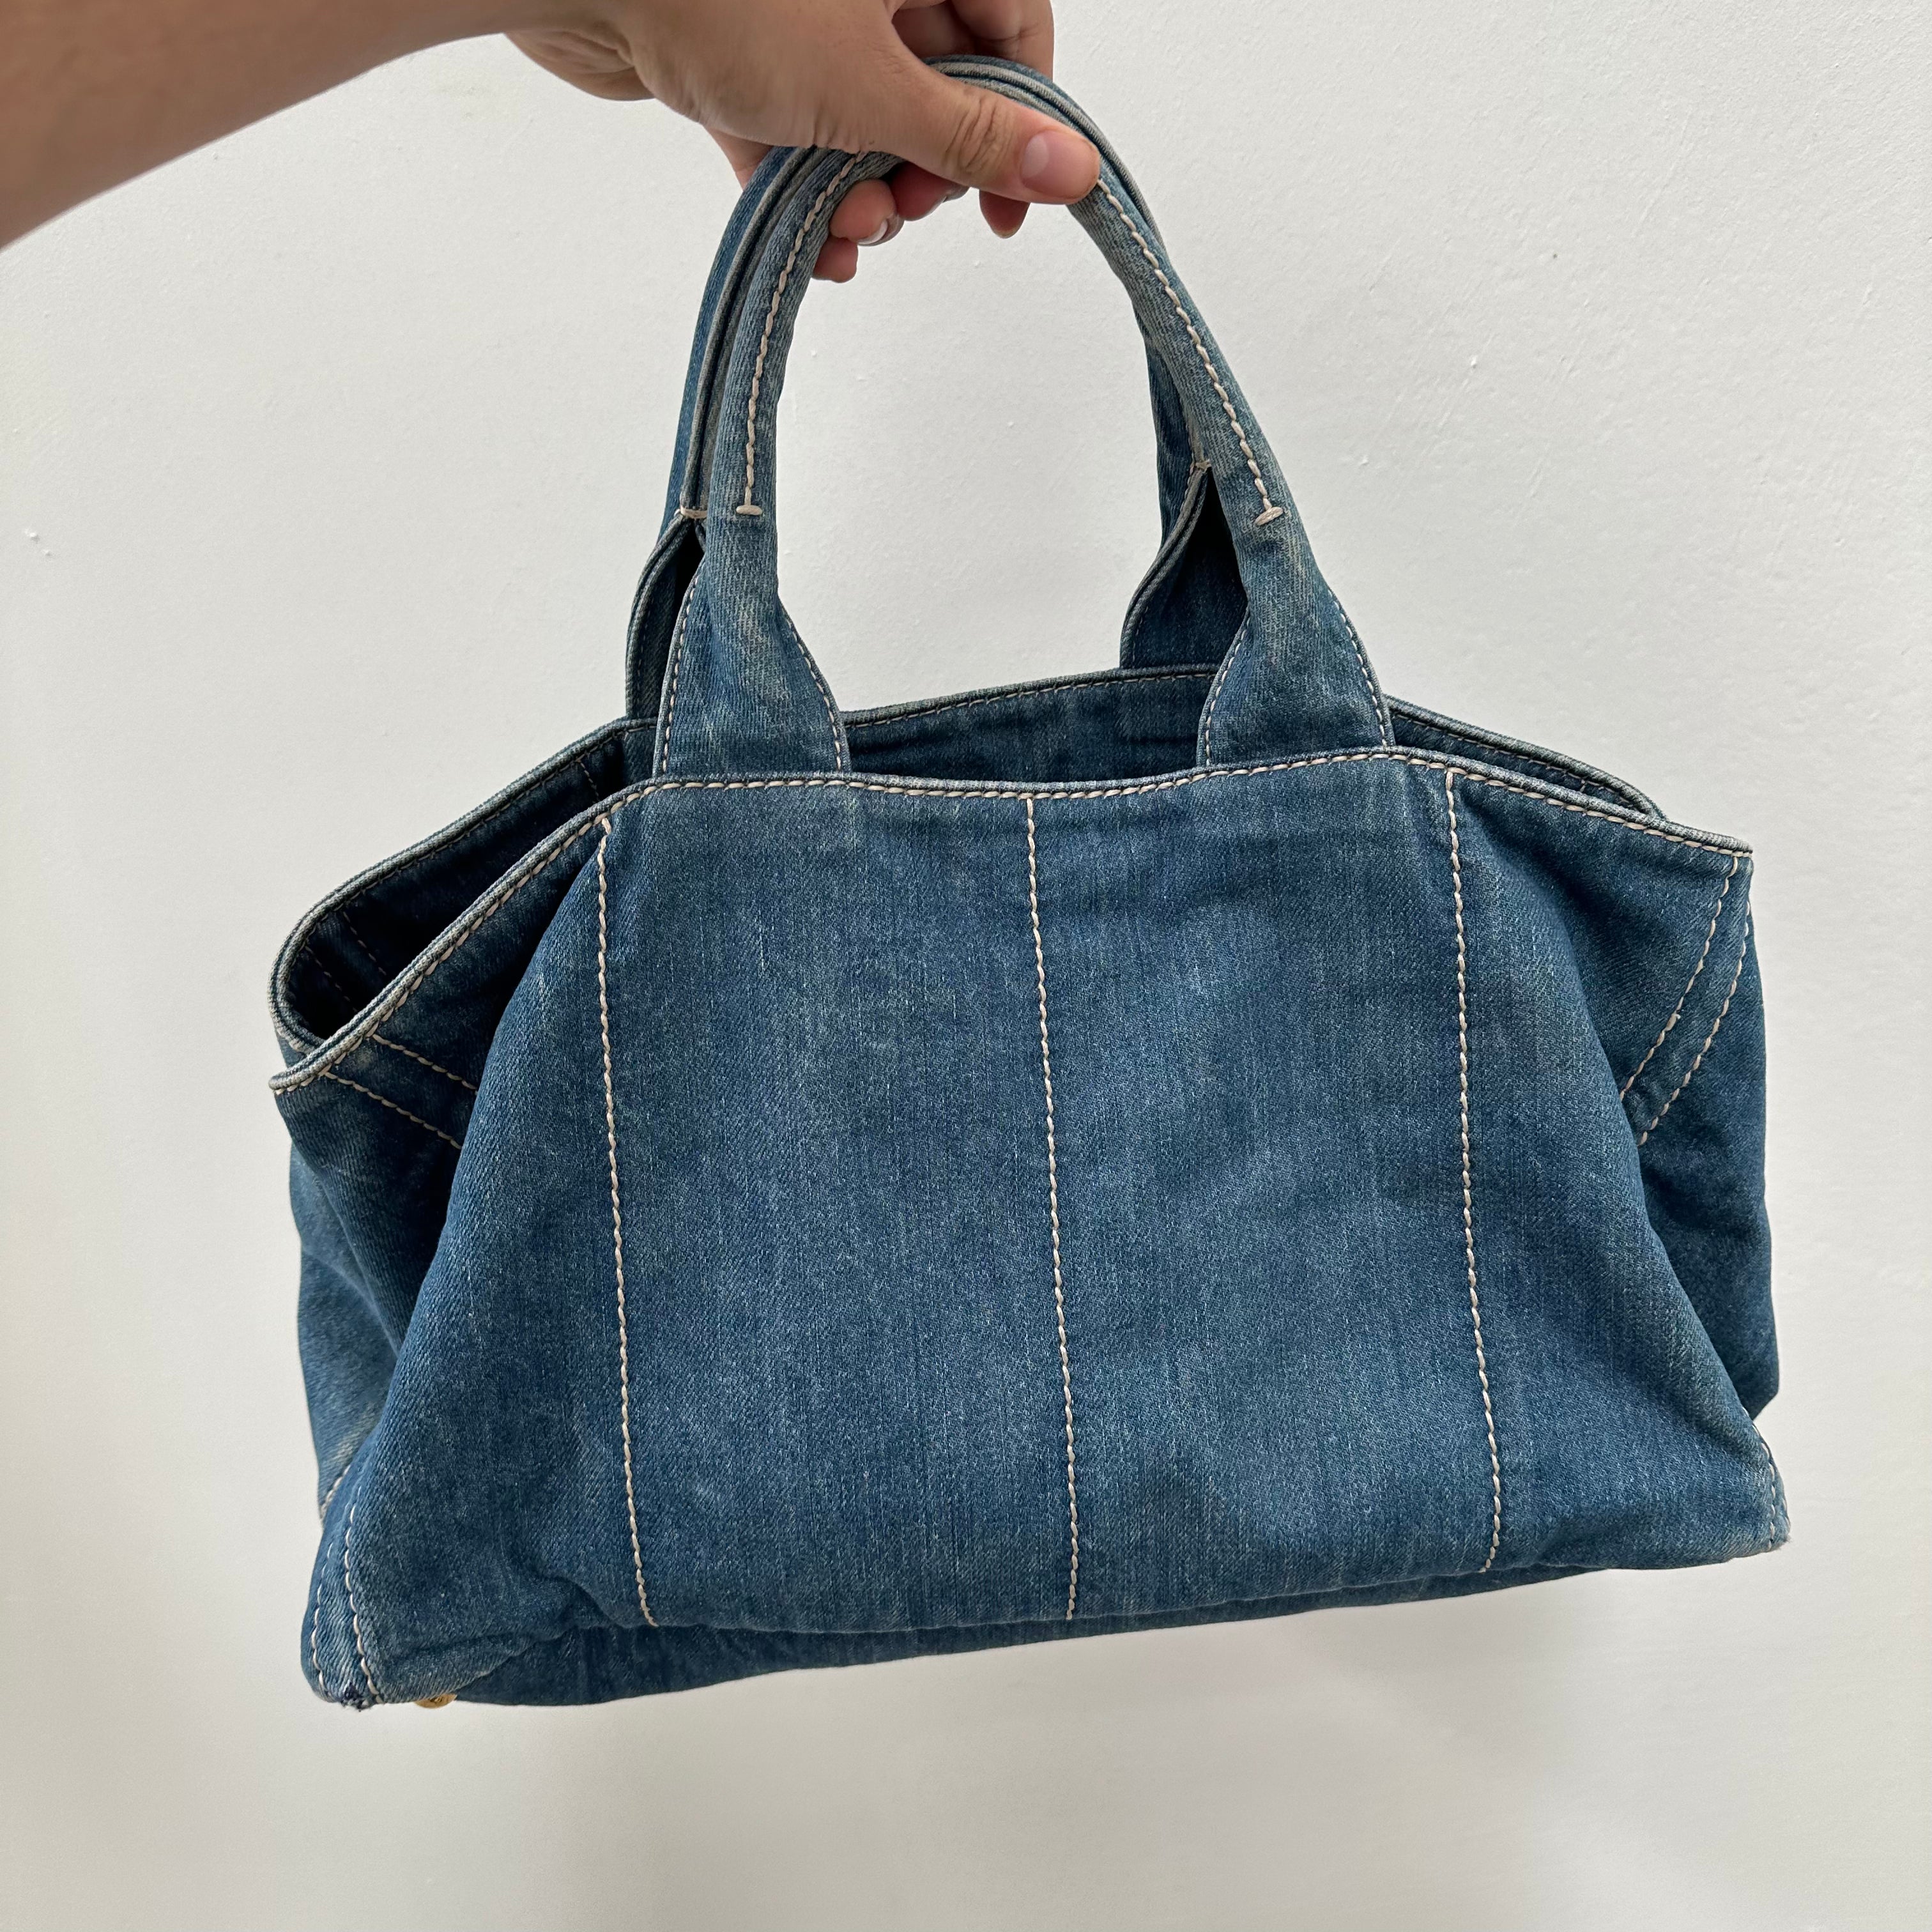 Prada Canapa GM Hand Bag Denim Blue